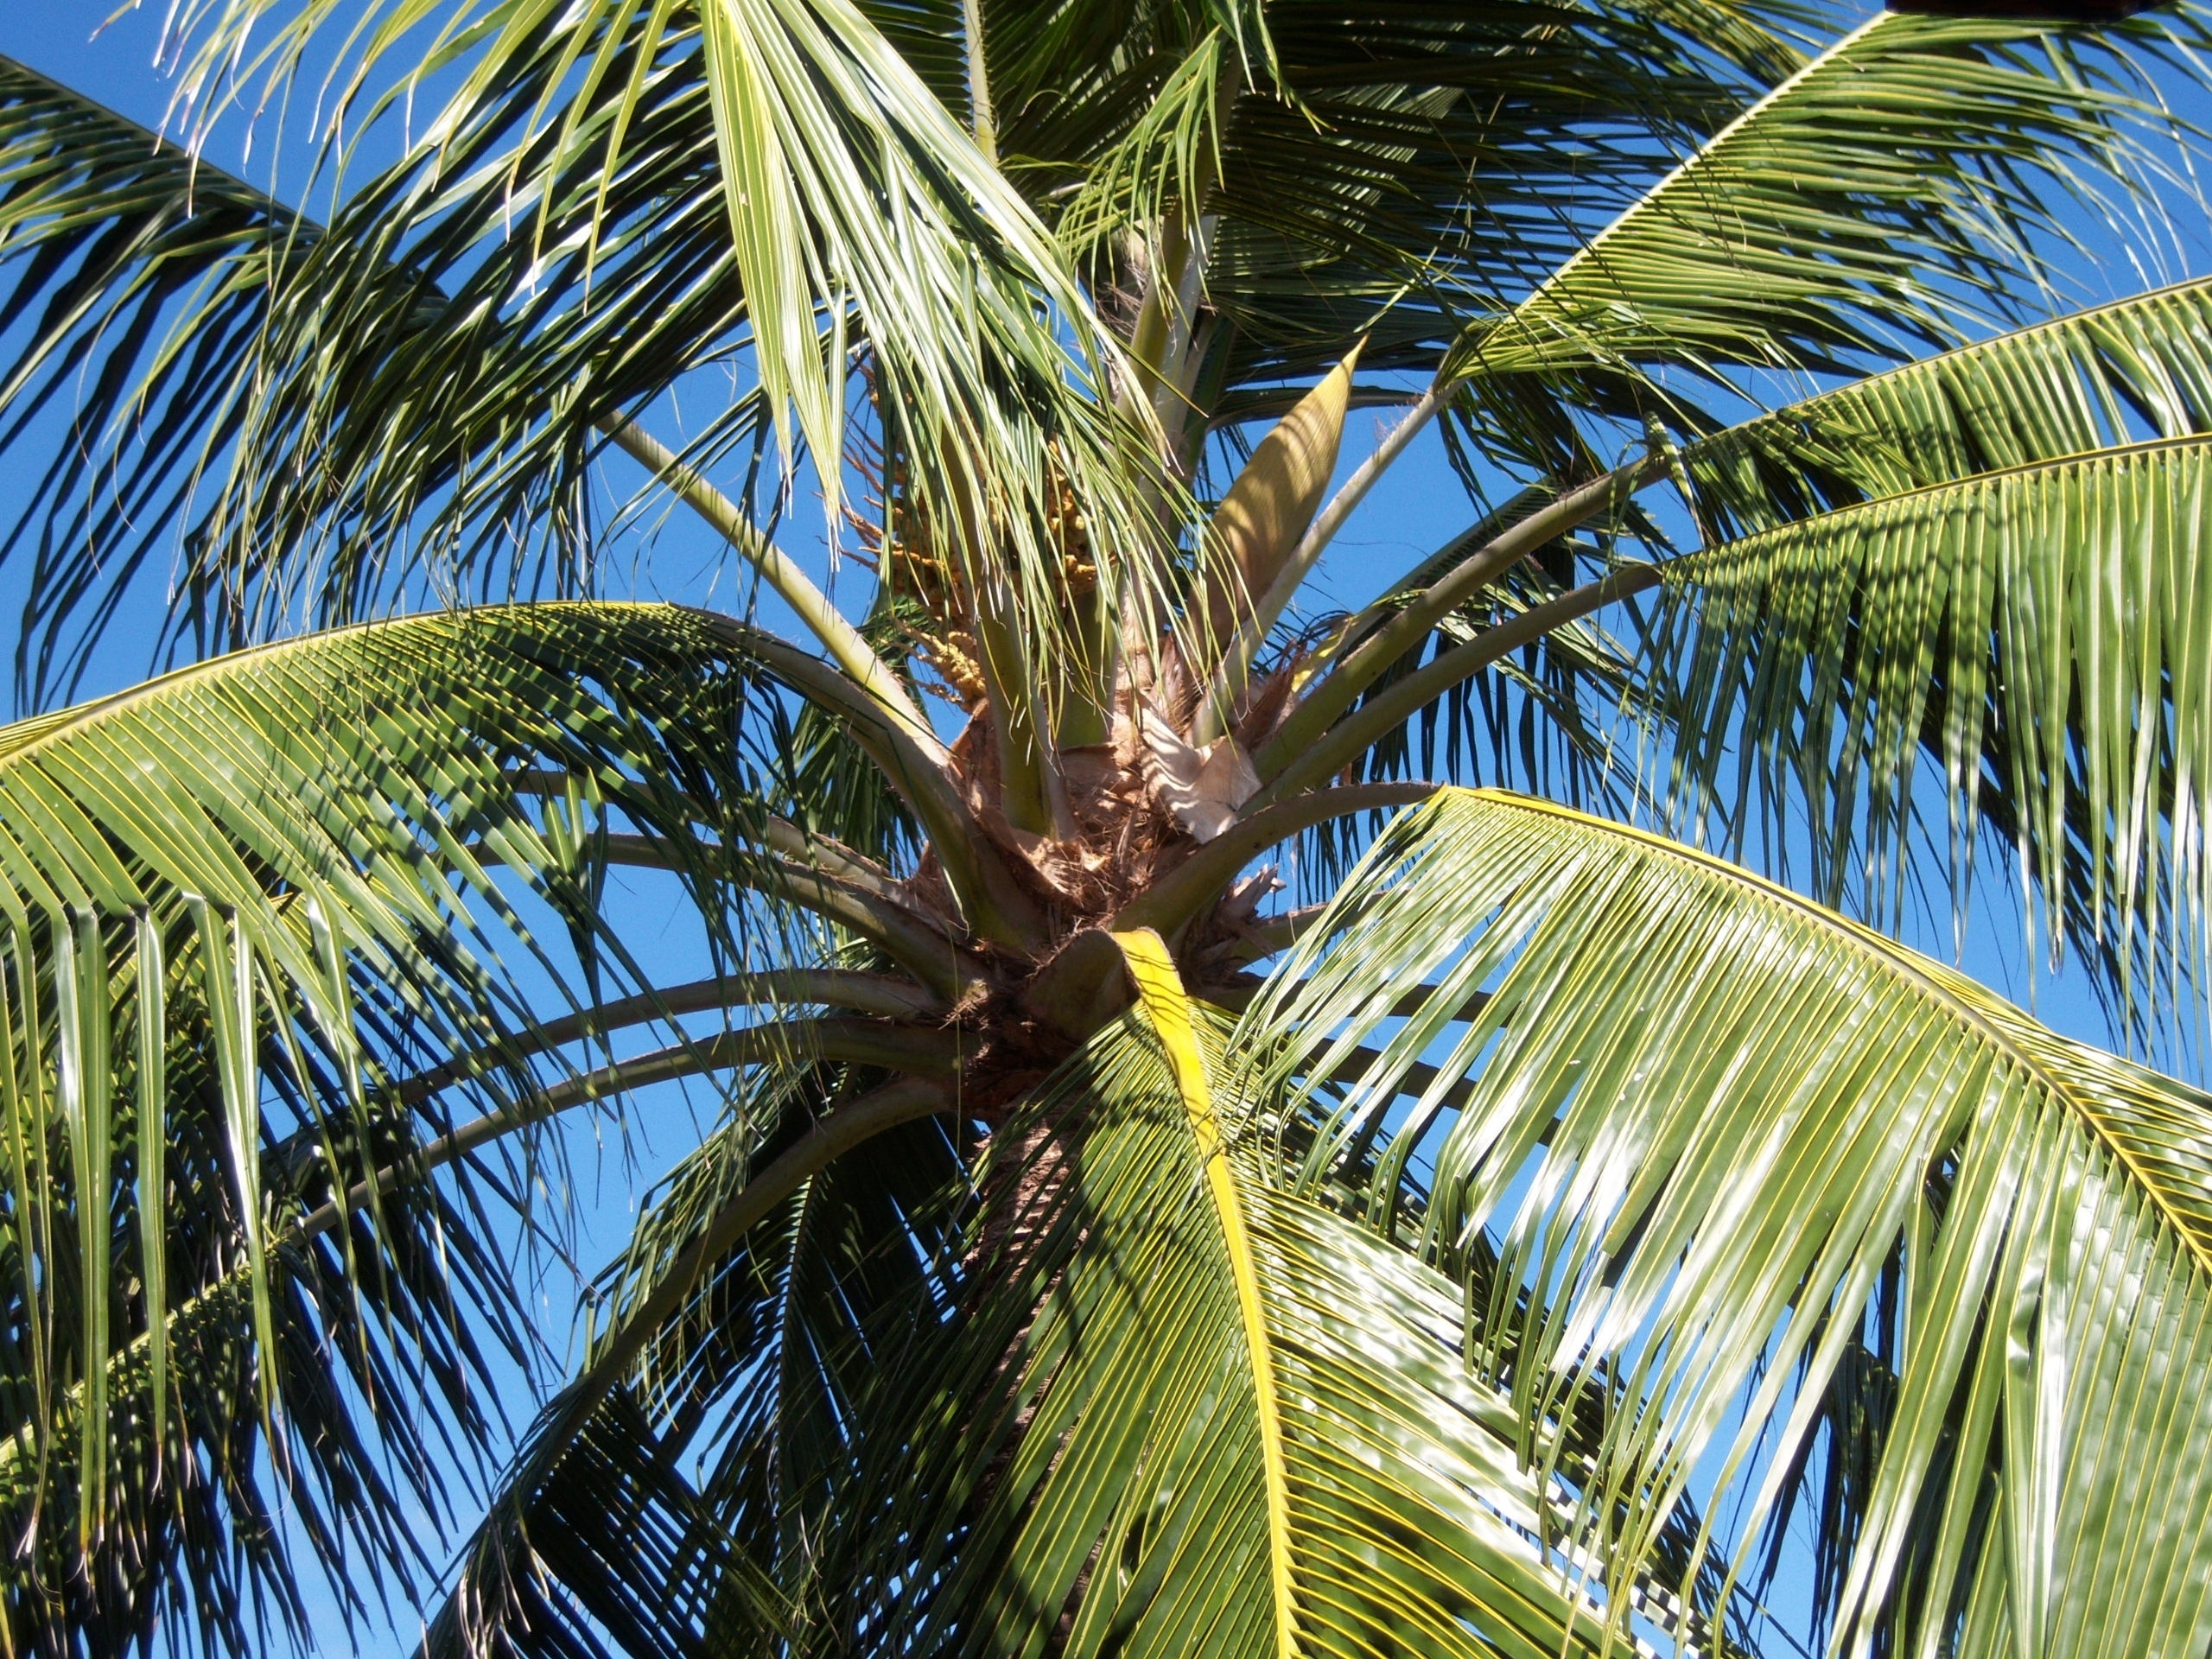 Blue Sky, Coconut Tree, Palm, Caribbean, palm tree, palm leaf